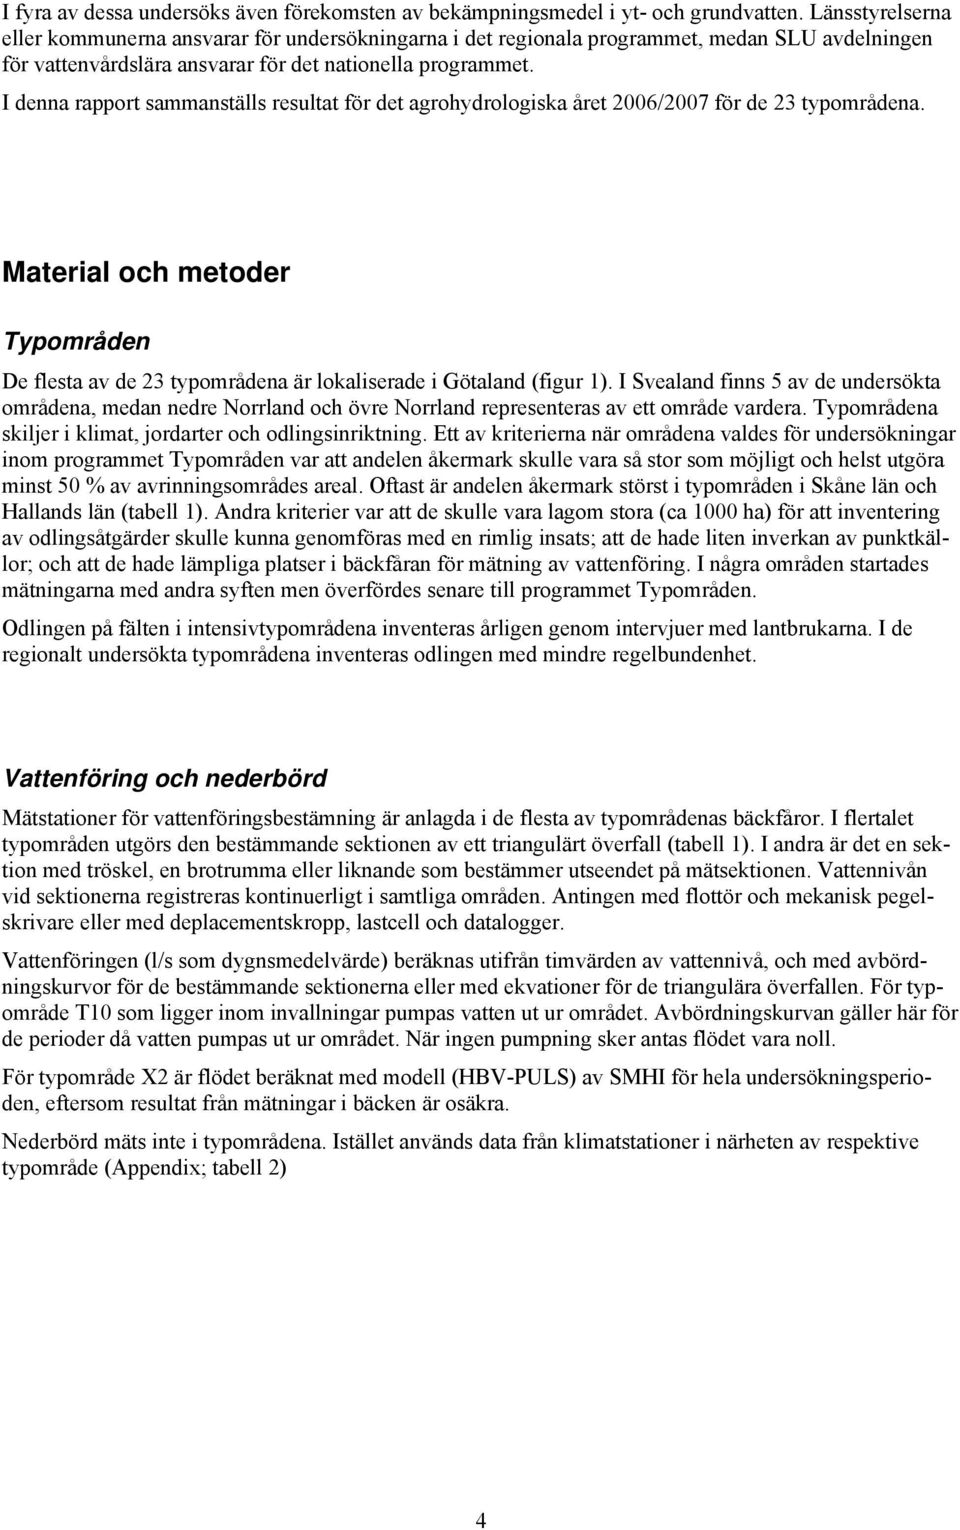 I denna rapport sammanställs resultat för det agrohydrologiska året 26/27 för de 23 typområdena. Material och metoder Typområden De flesta av de 23 typområdena är lokaliserade i Götaland (figur 1).